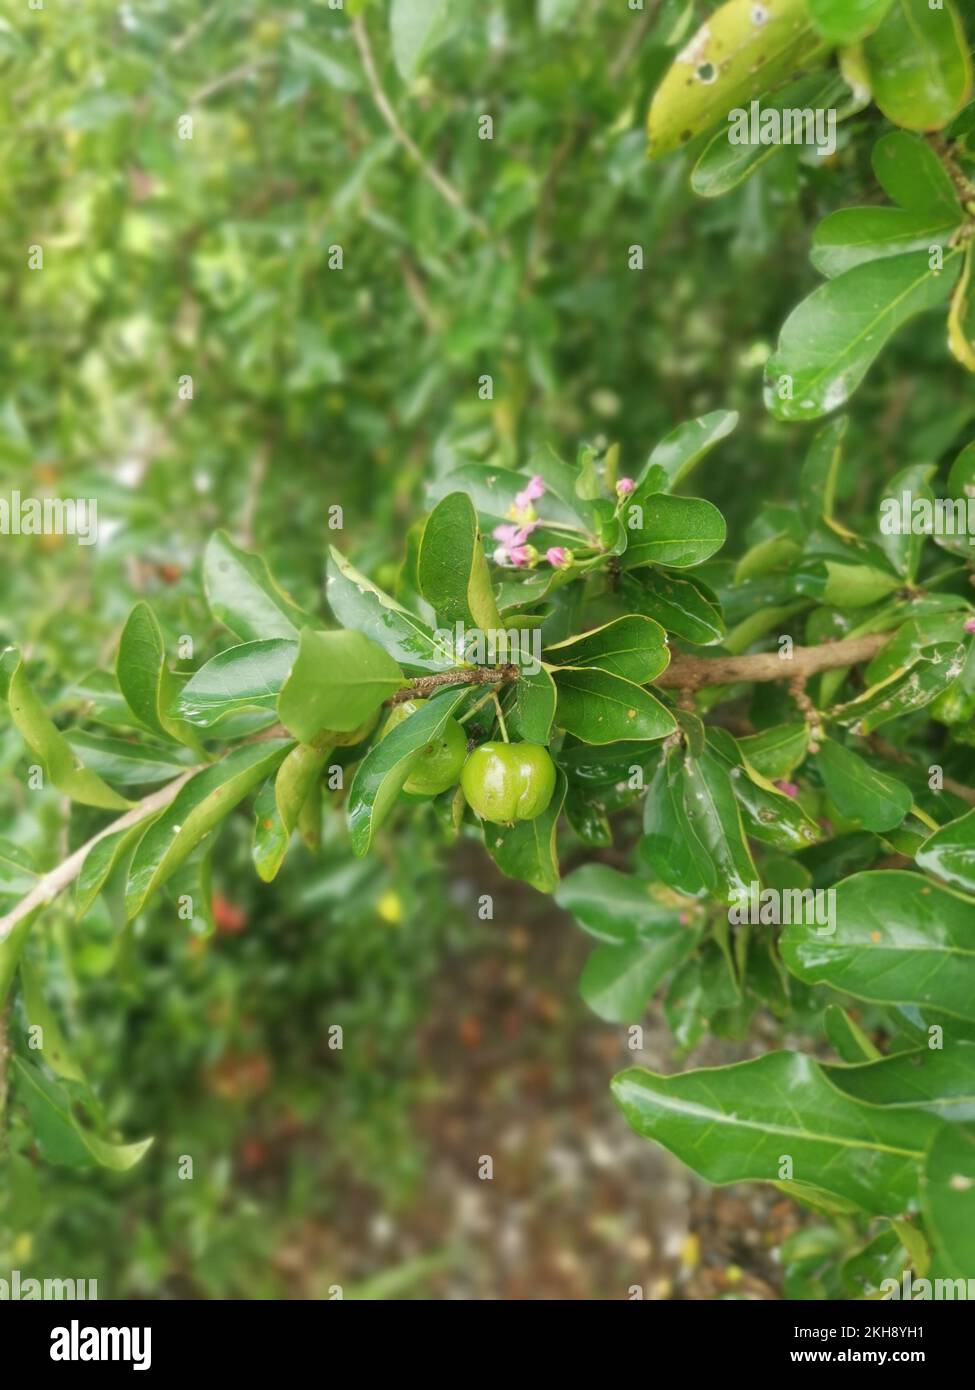 wild malgighia glabra plant bearing fruits. Stock Photo